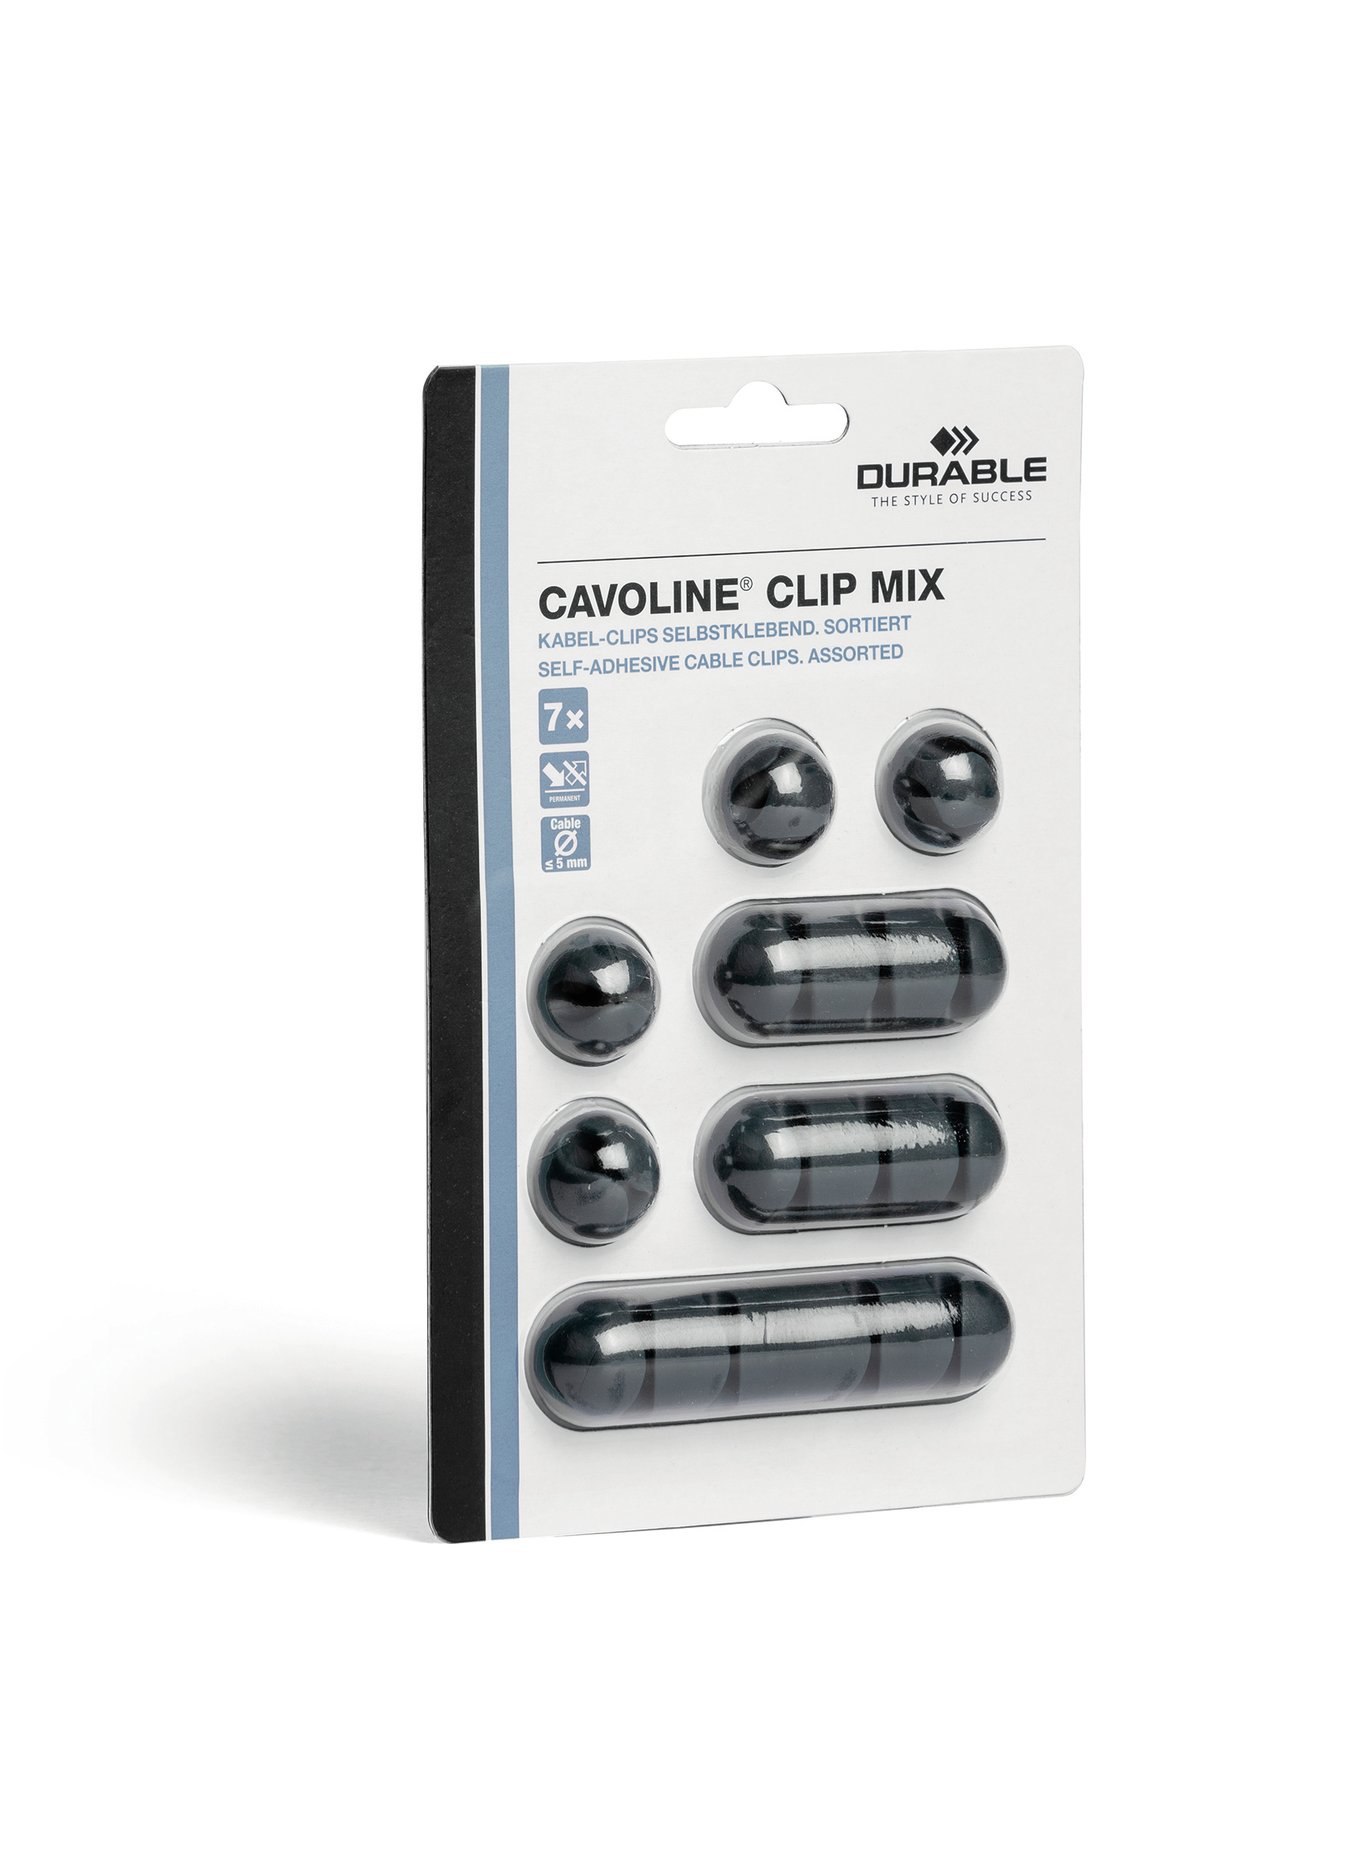 Självhäftande kabelklämma Durable Cavoline Clip mix grå 70620267_2